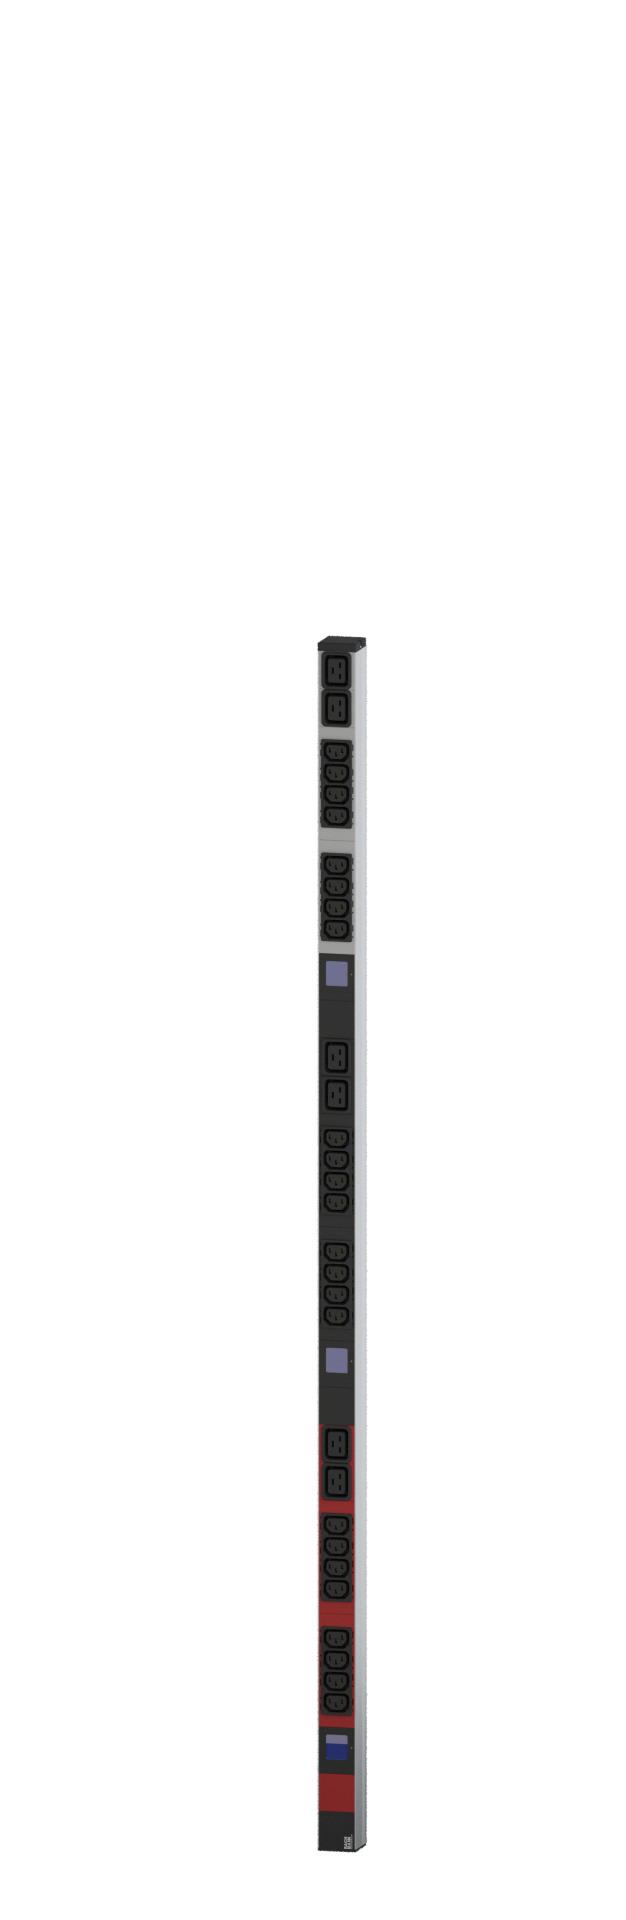 PDU Vertikal BN500 24xC13 6xC19 400V 16A mit Leistungsmessung (Display)